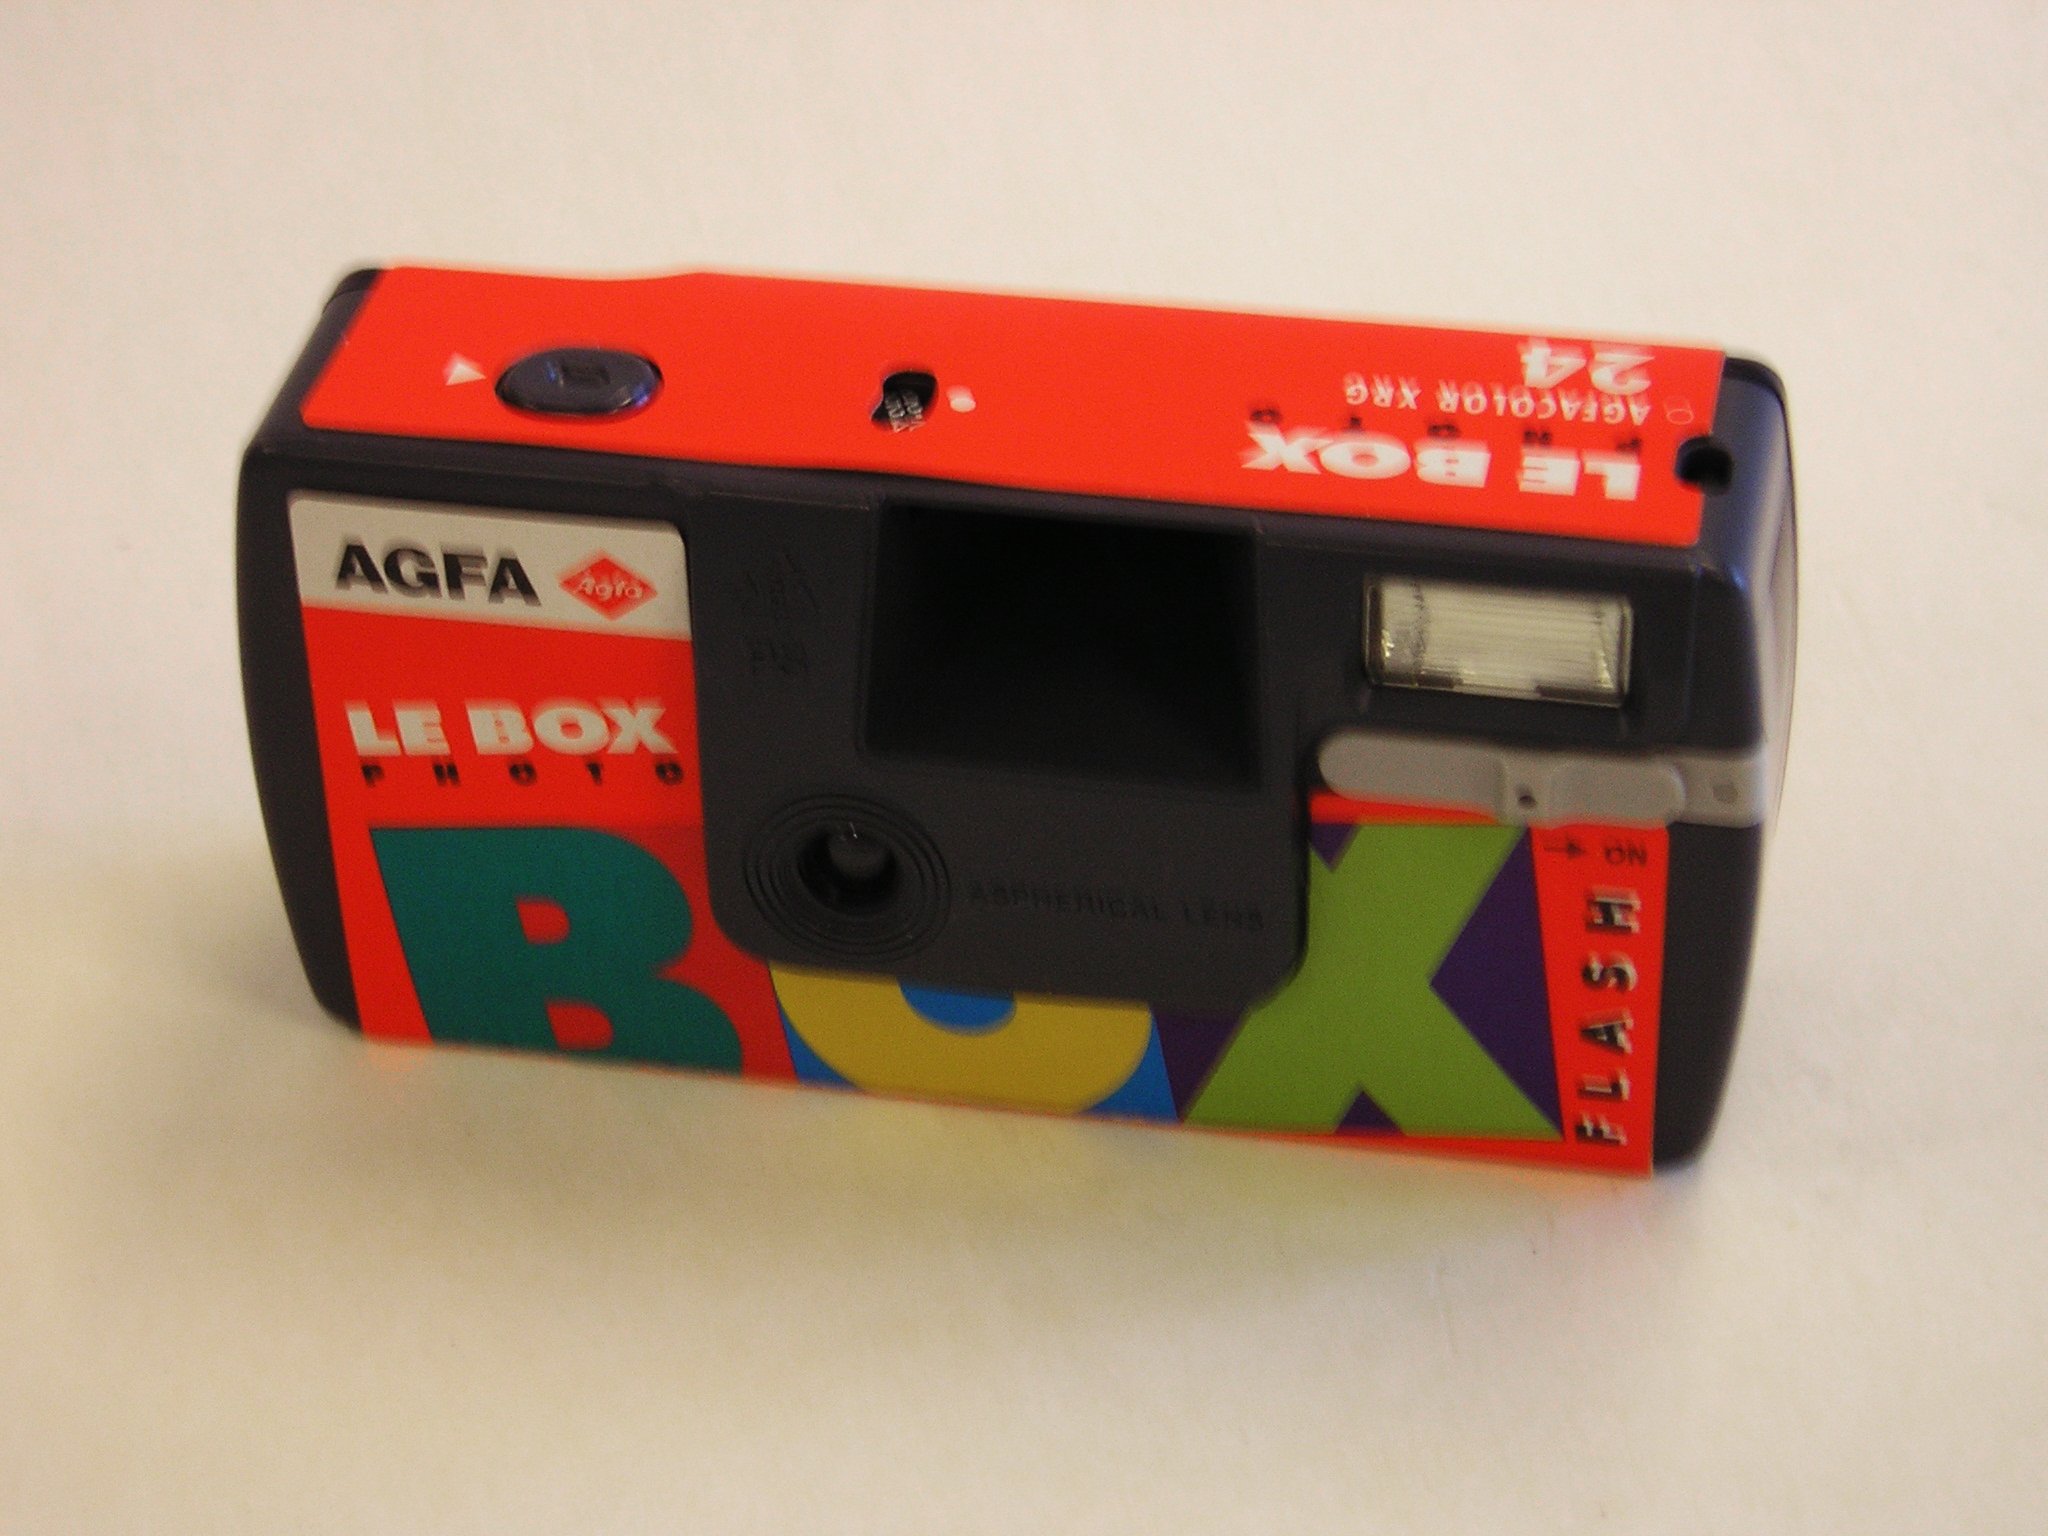 Agfa Le Box